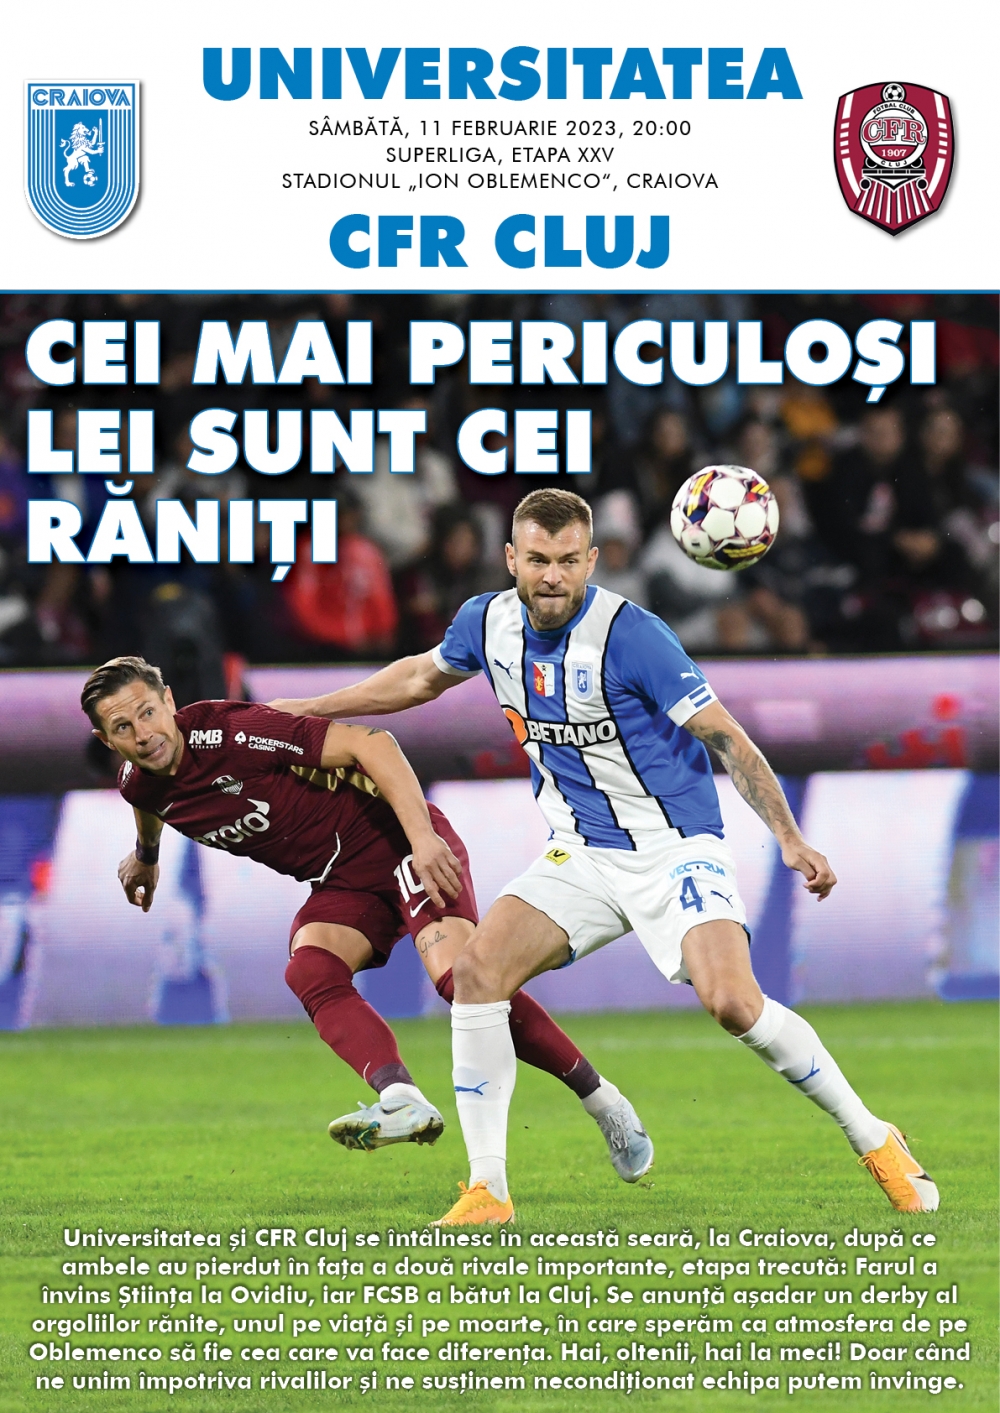 Programul de meci cu CFR Cluj, în format digital